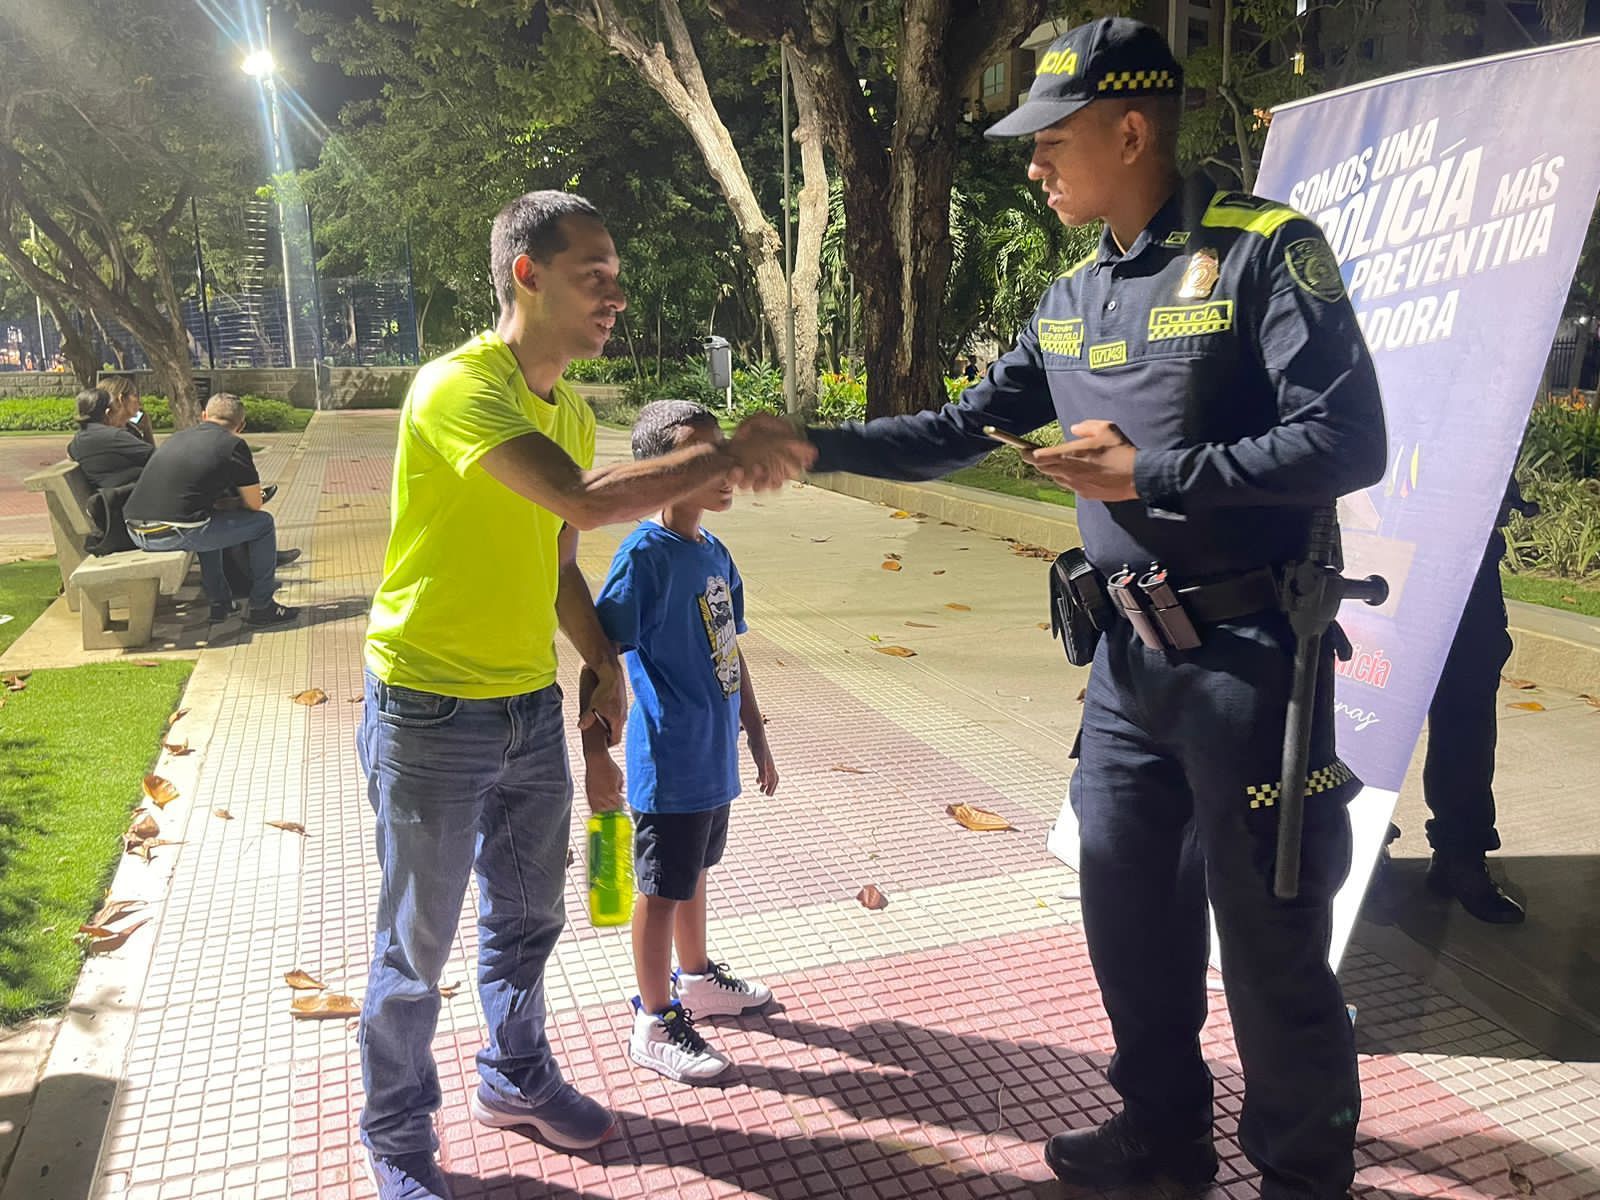 Policía metropolitana de Barranquilla hará presencia en toda la ciudad y su área metropolitana durante la noche buena